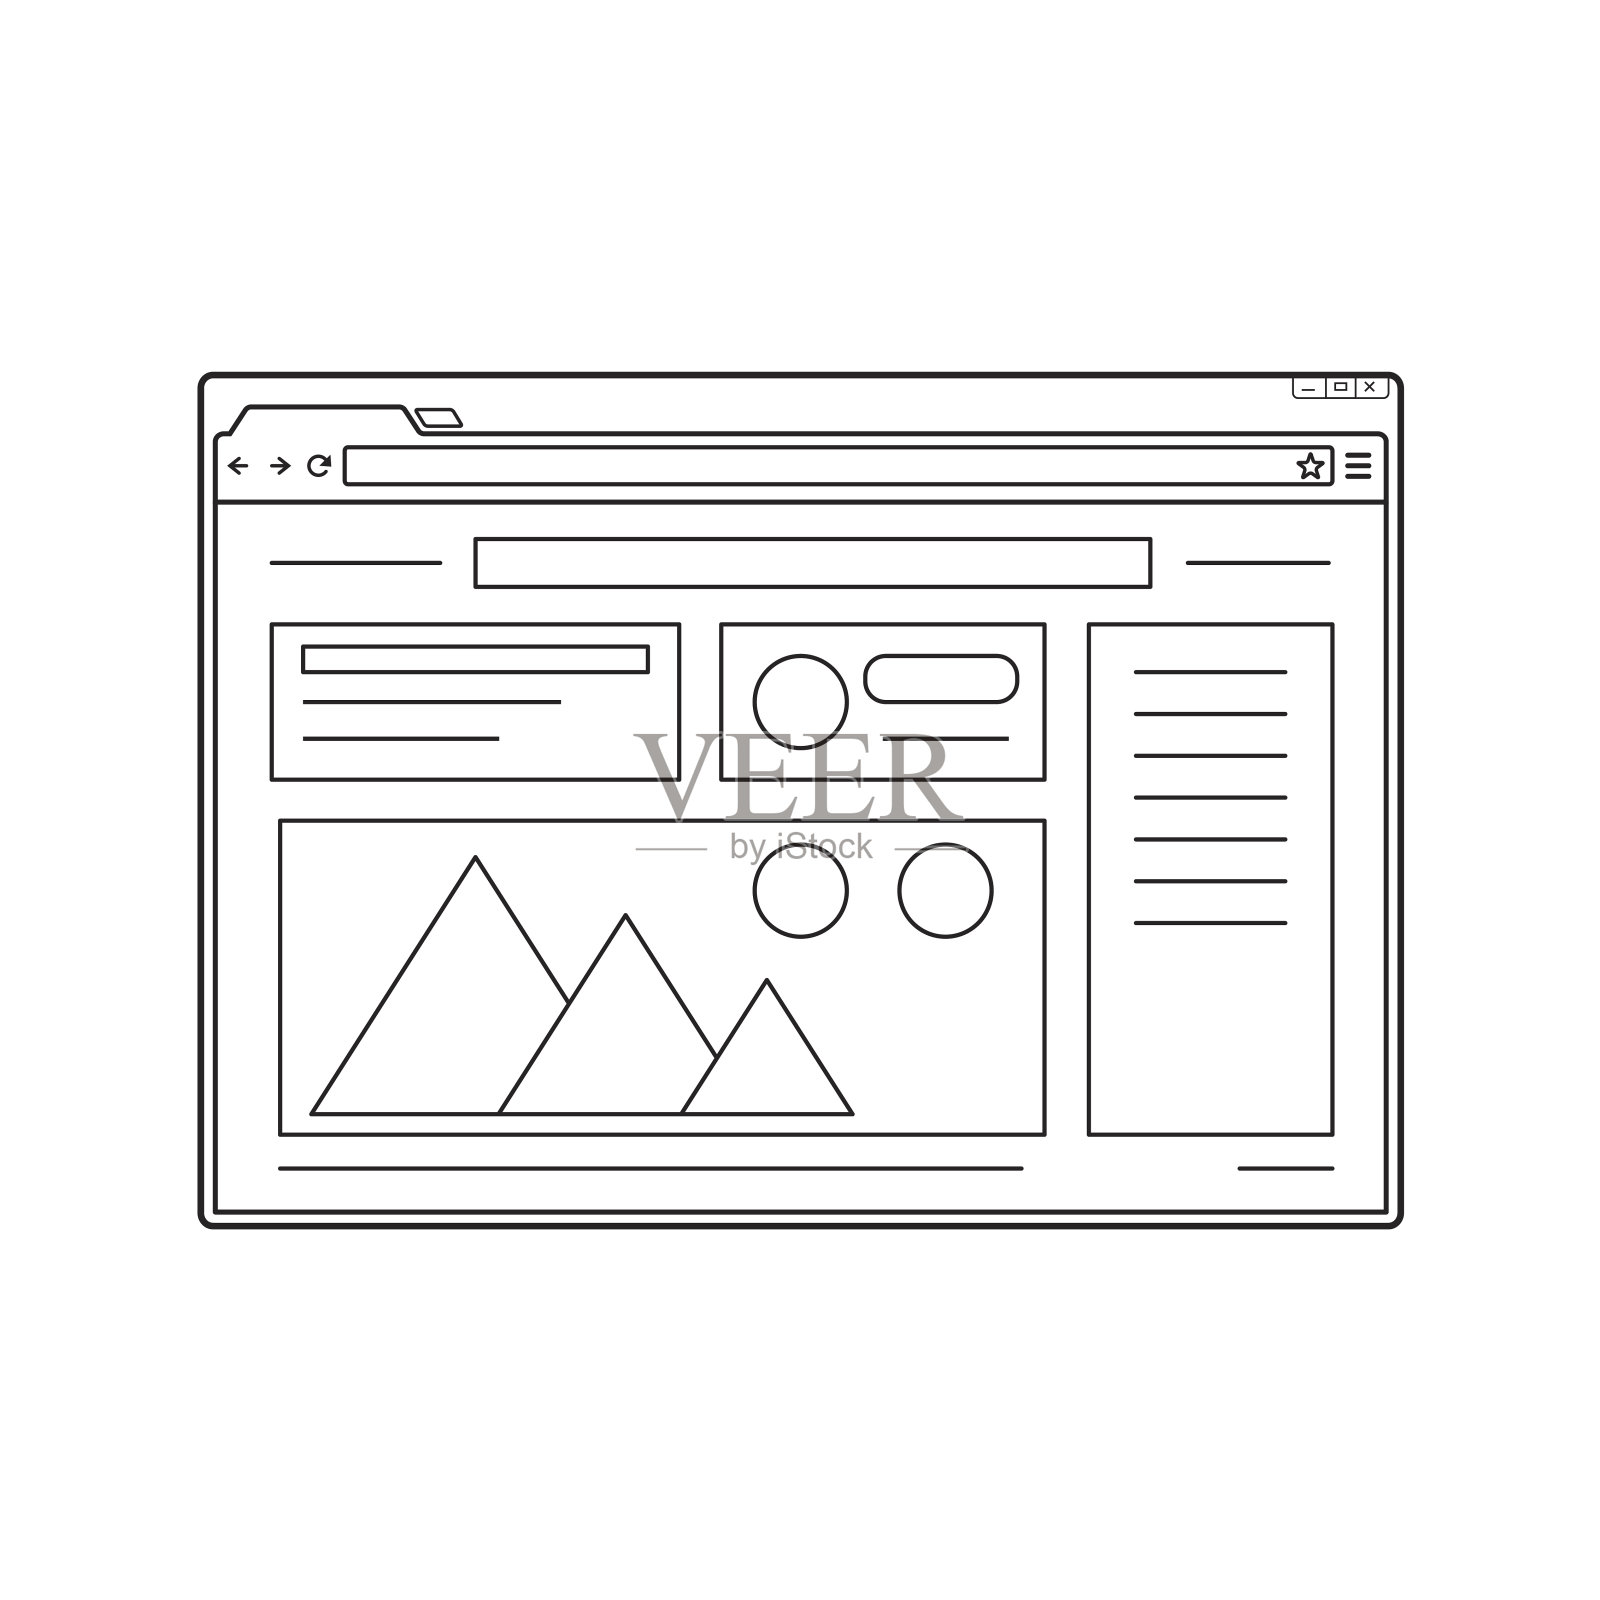 行web浏览器窗口模型。网站页面模板。设计模板素材